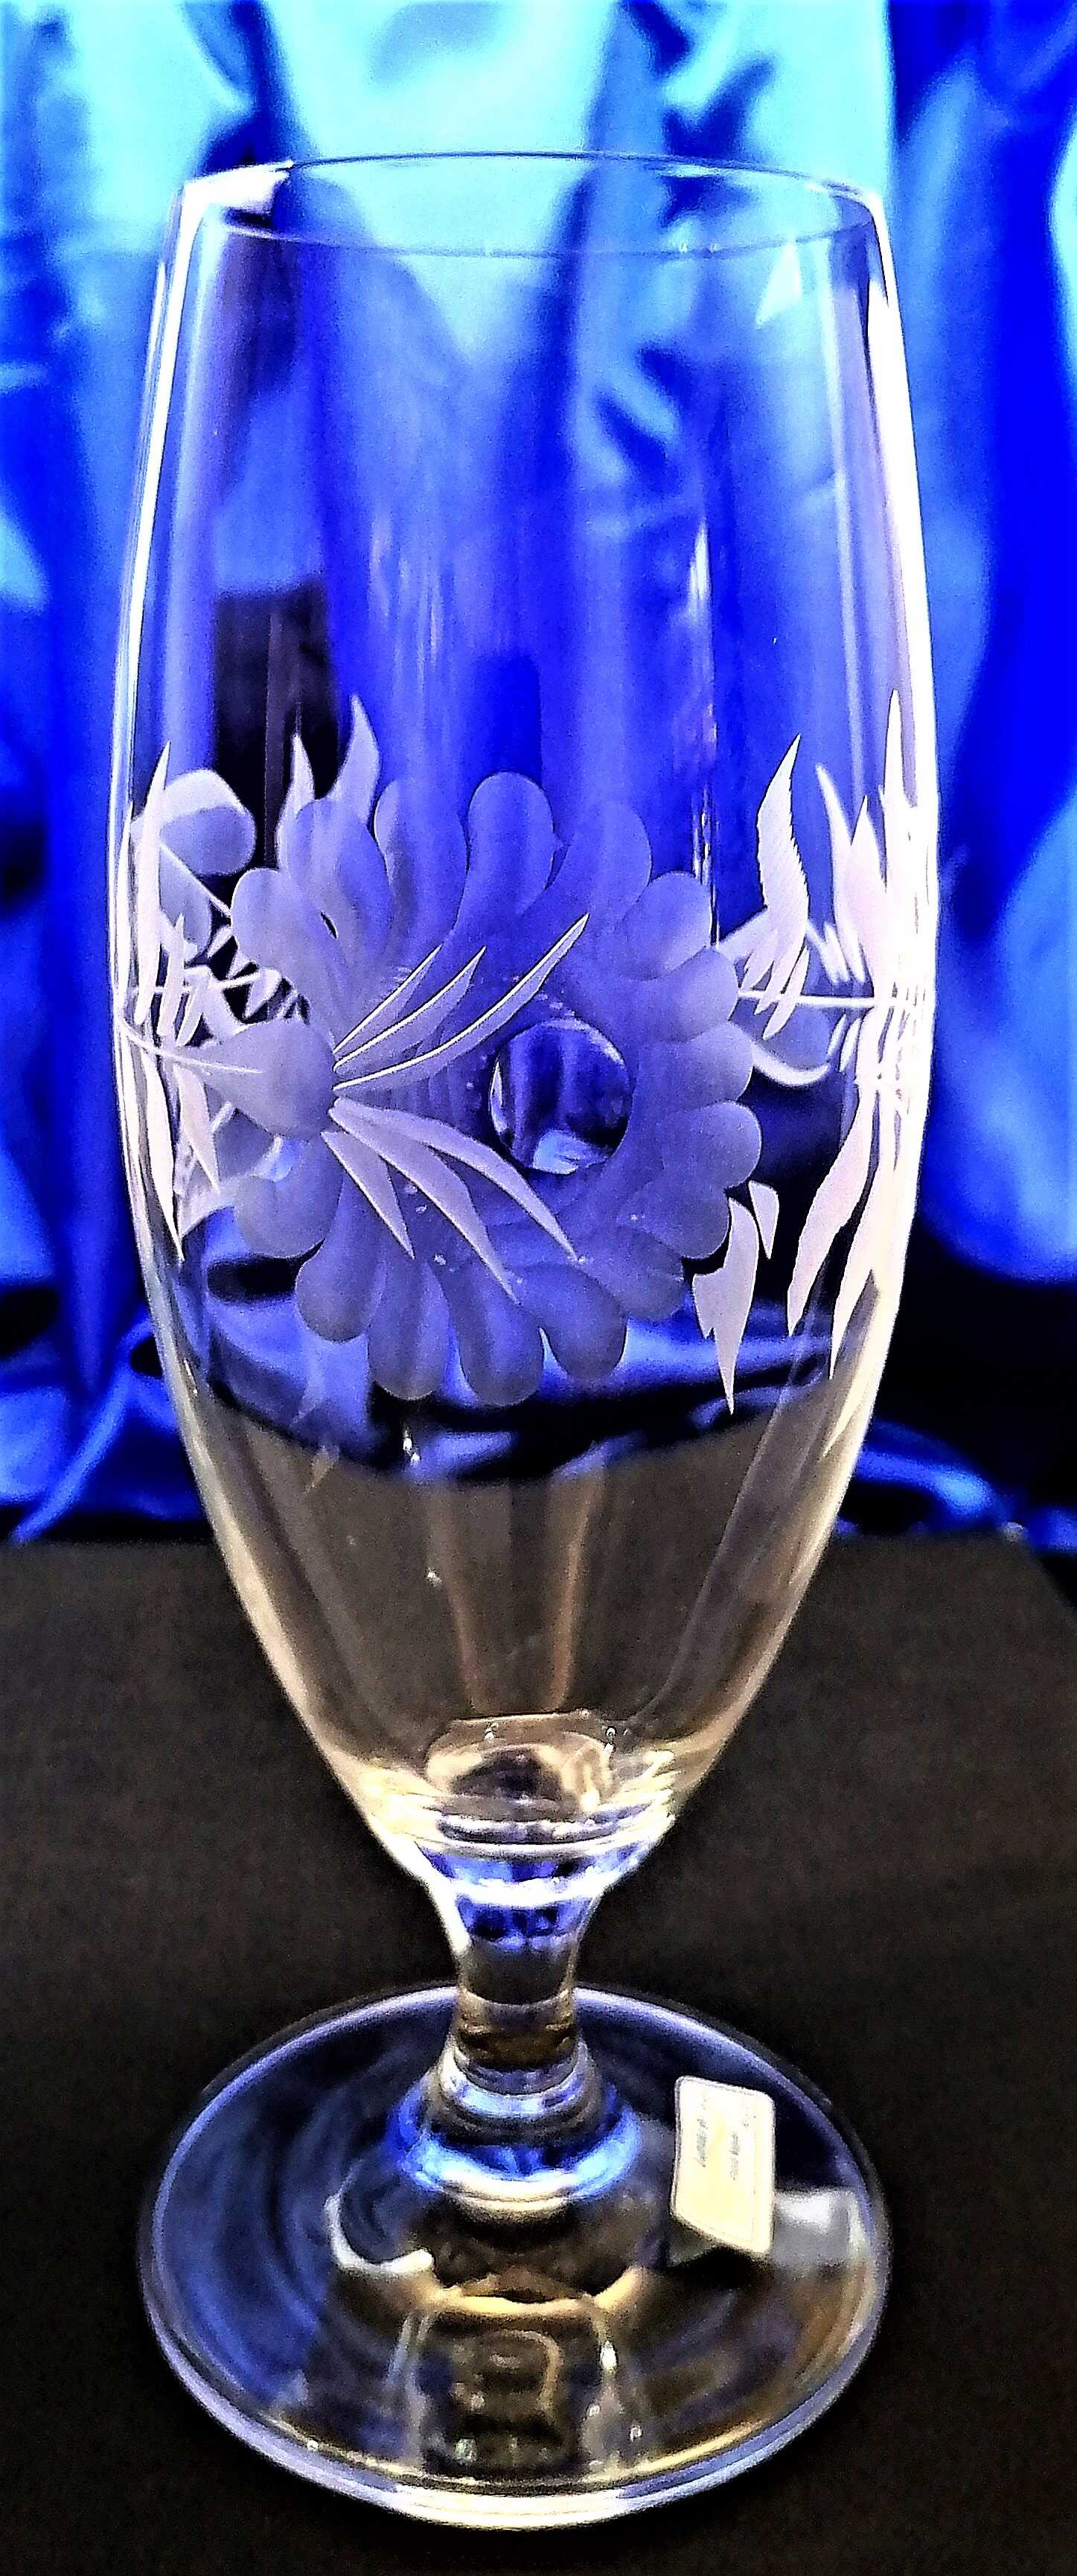 Bier/ Wasser Kristallgläser Hand geschliffen Alt Gravur Rose VU-187 380 ml 6 Stück.